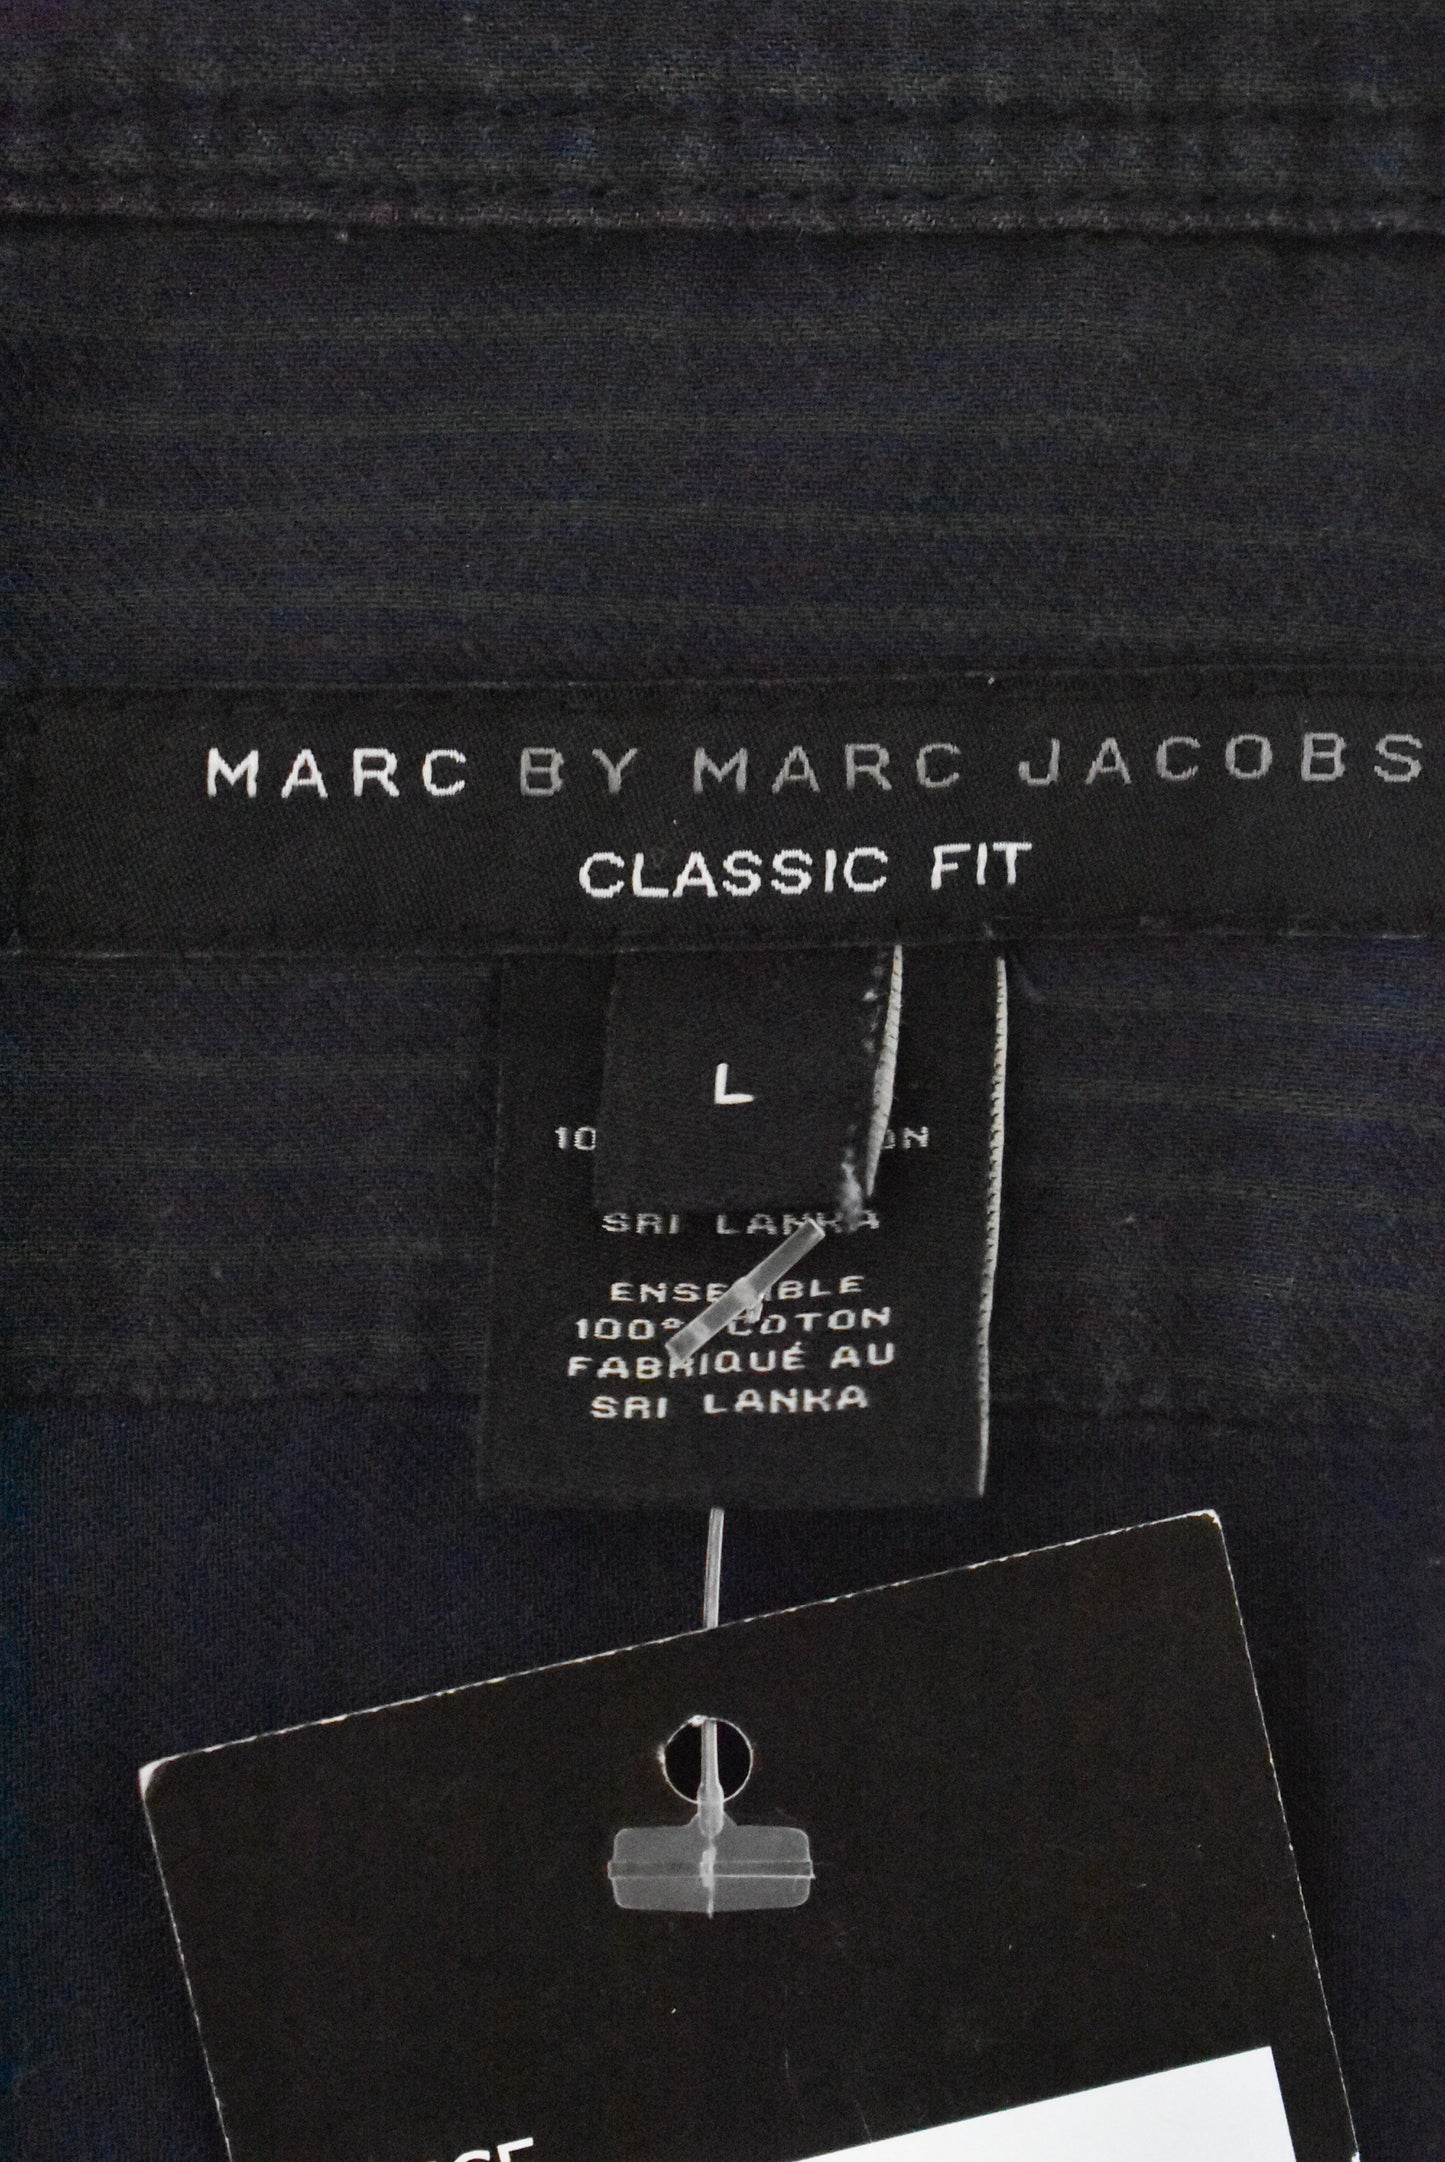 Marc Jacobs classic fit button down shirt, L